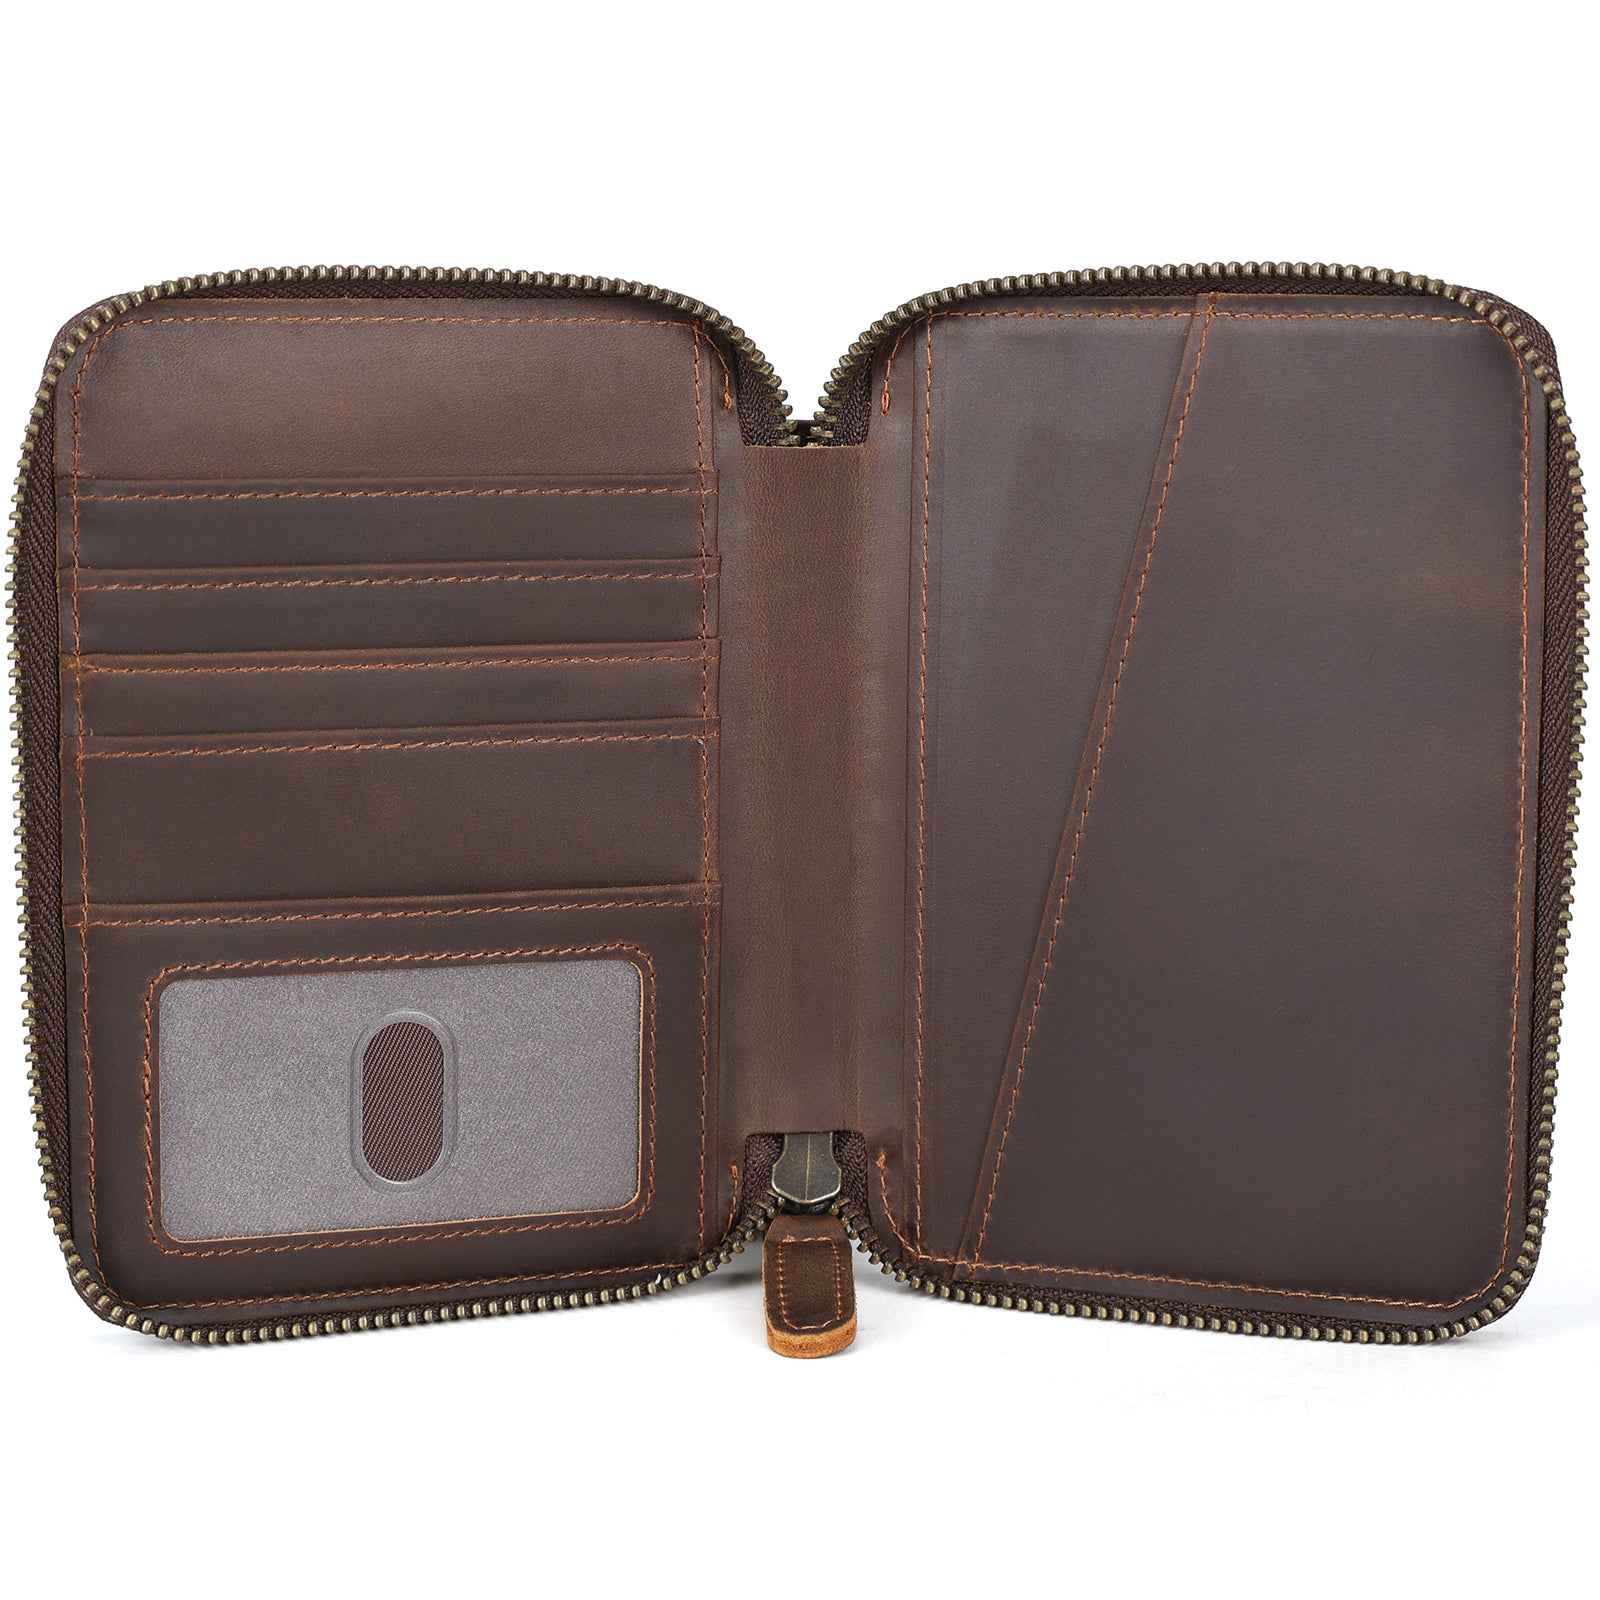 Full Grain Leather Travel Bifold Passport Holder with YKK Zipper (Inside)